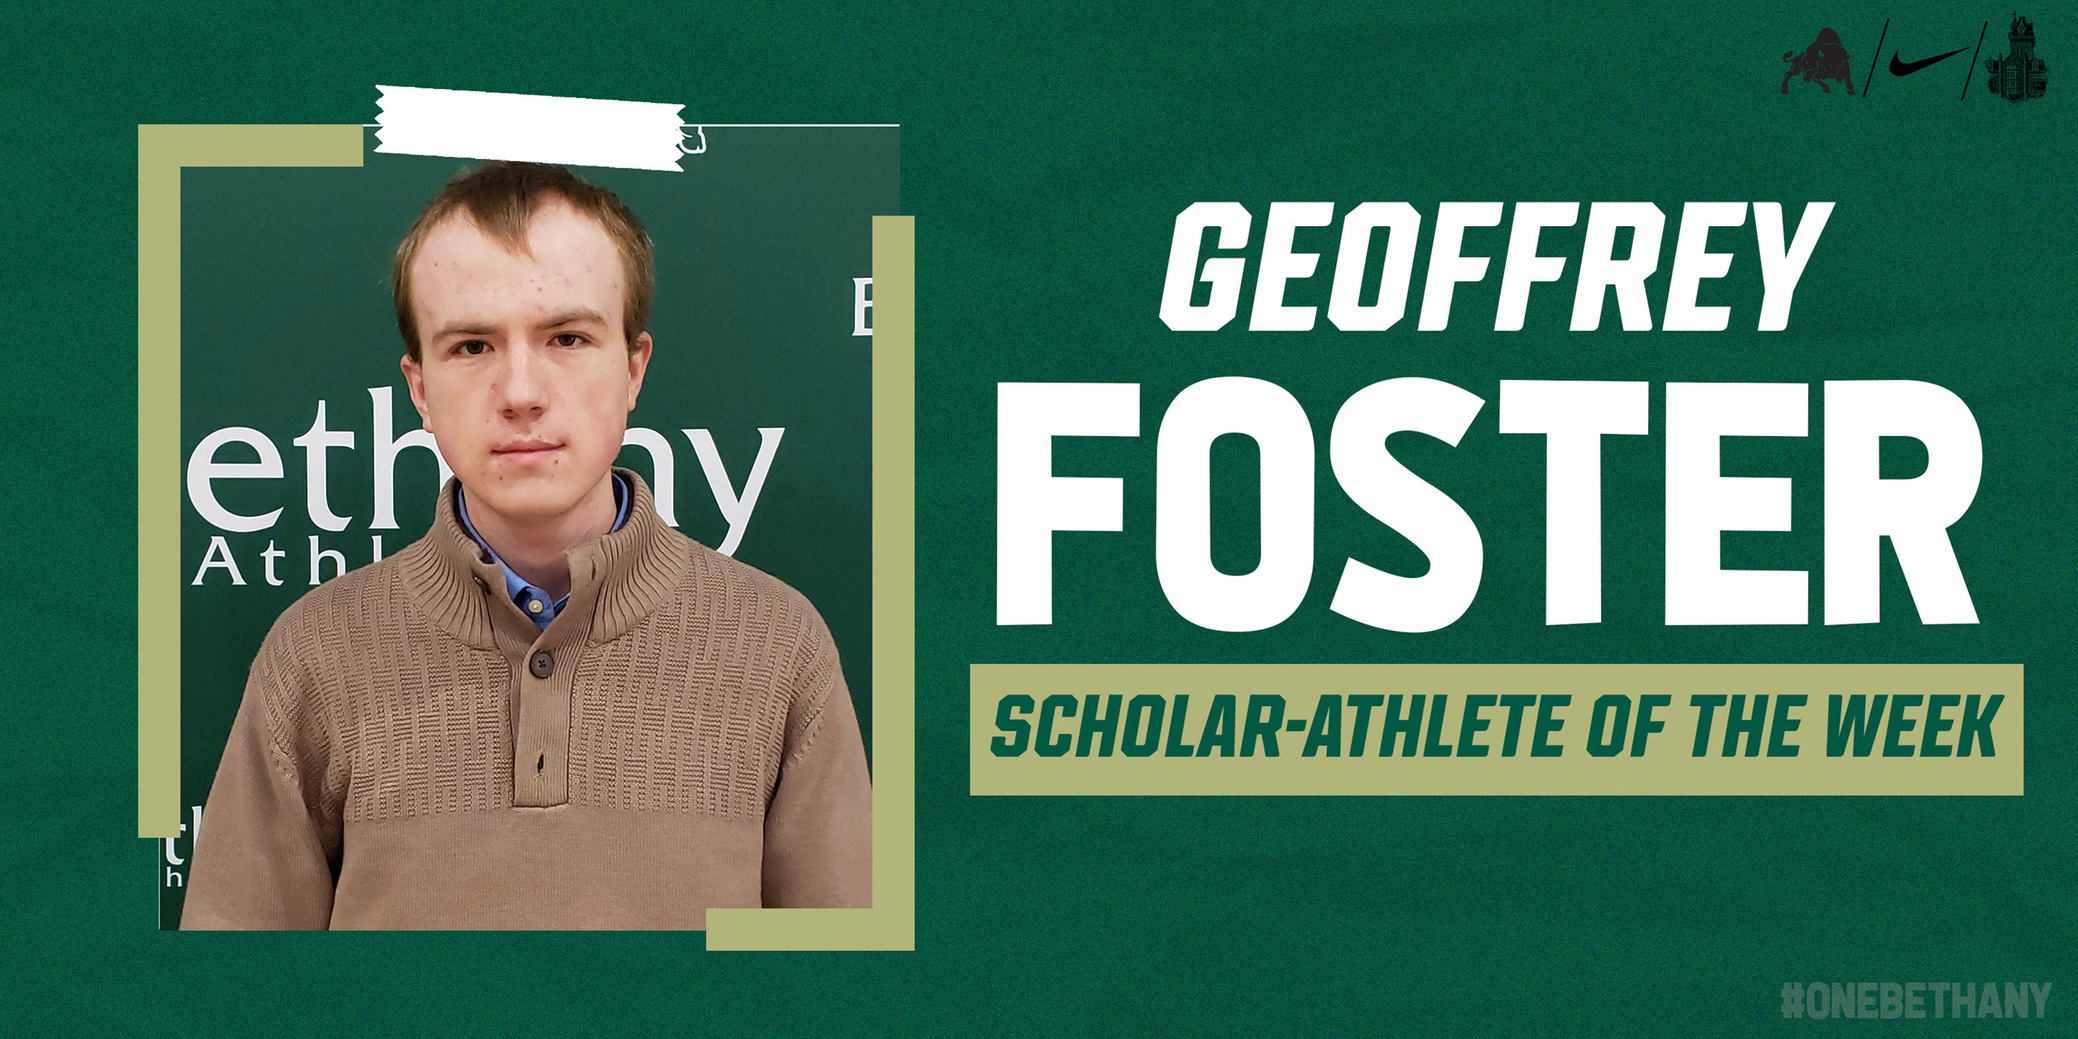 Bison Scholar-Athlete Spotlight: Geoffrey Foster